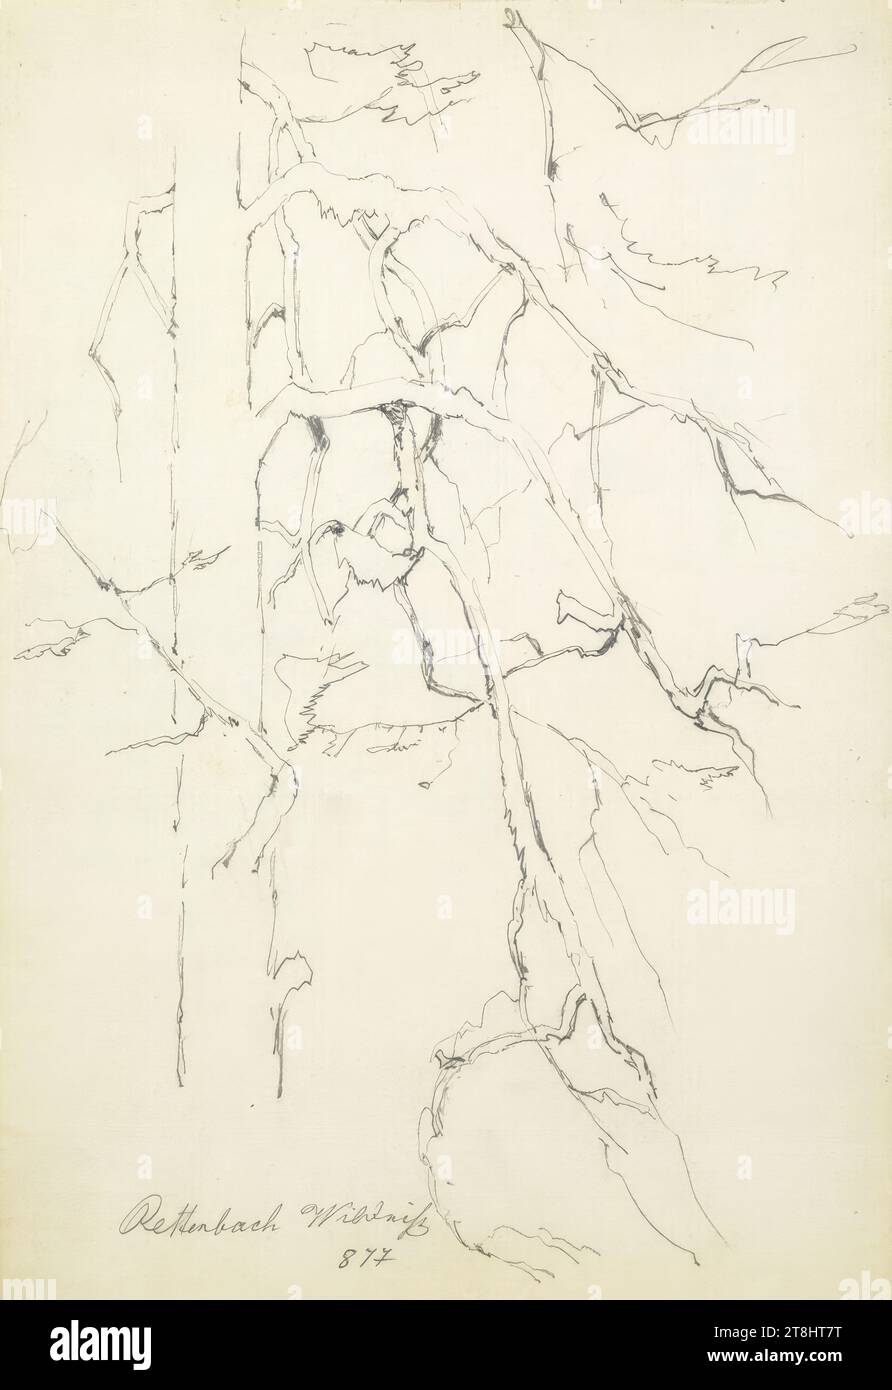 Rettenbach Wilderness, sketchbook Hörmann Theodor von; 28 pagine impaginate, Theodor von Hörmann, Imst 1840 - 1895 Graz, 1877, sketchbook: 1877-1878, disegno, matita, foglio: 21 cm x 13,9 cm, l.l. 'Rettenbach Wilderness / 877', matita Foto Stock